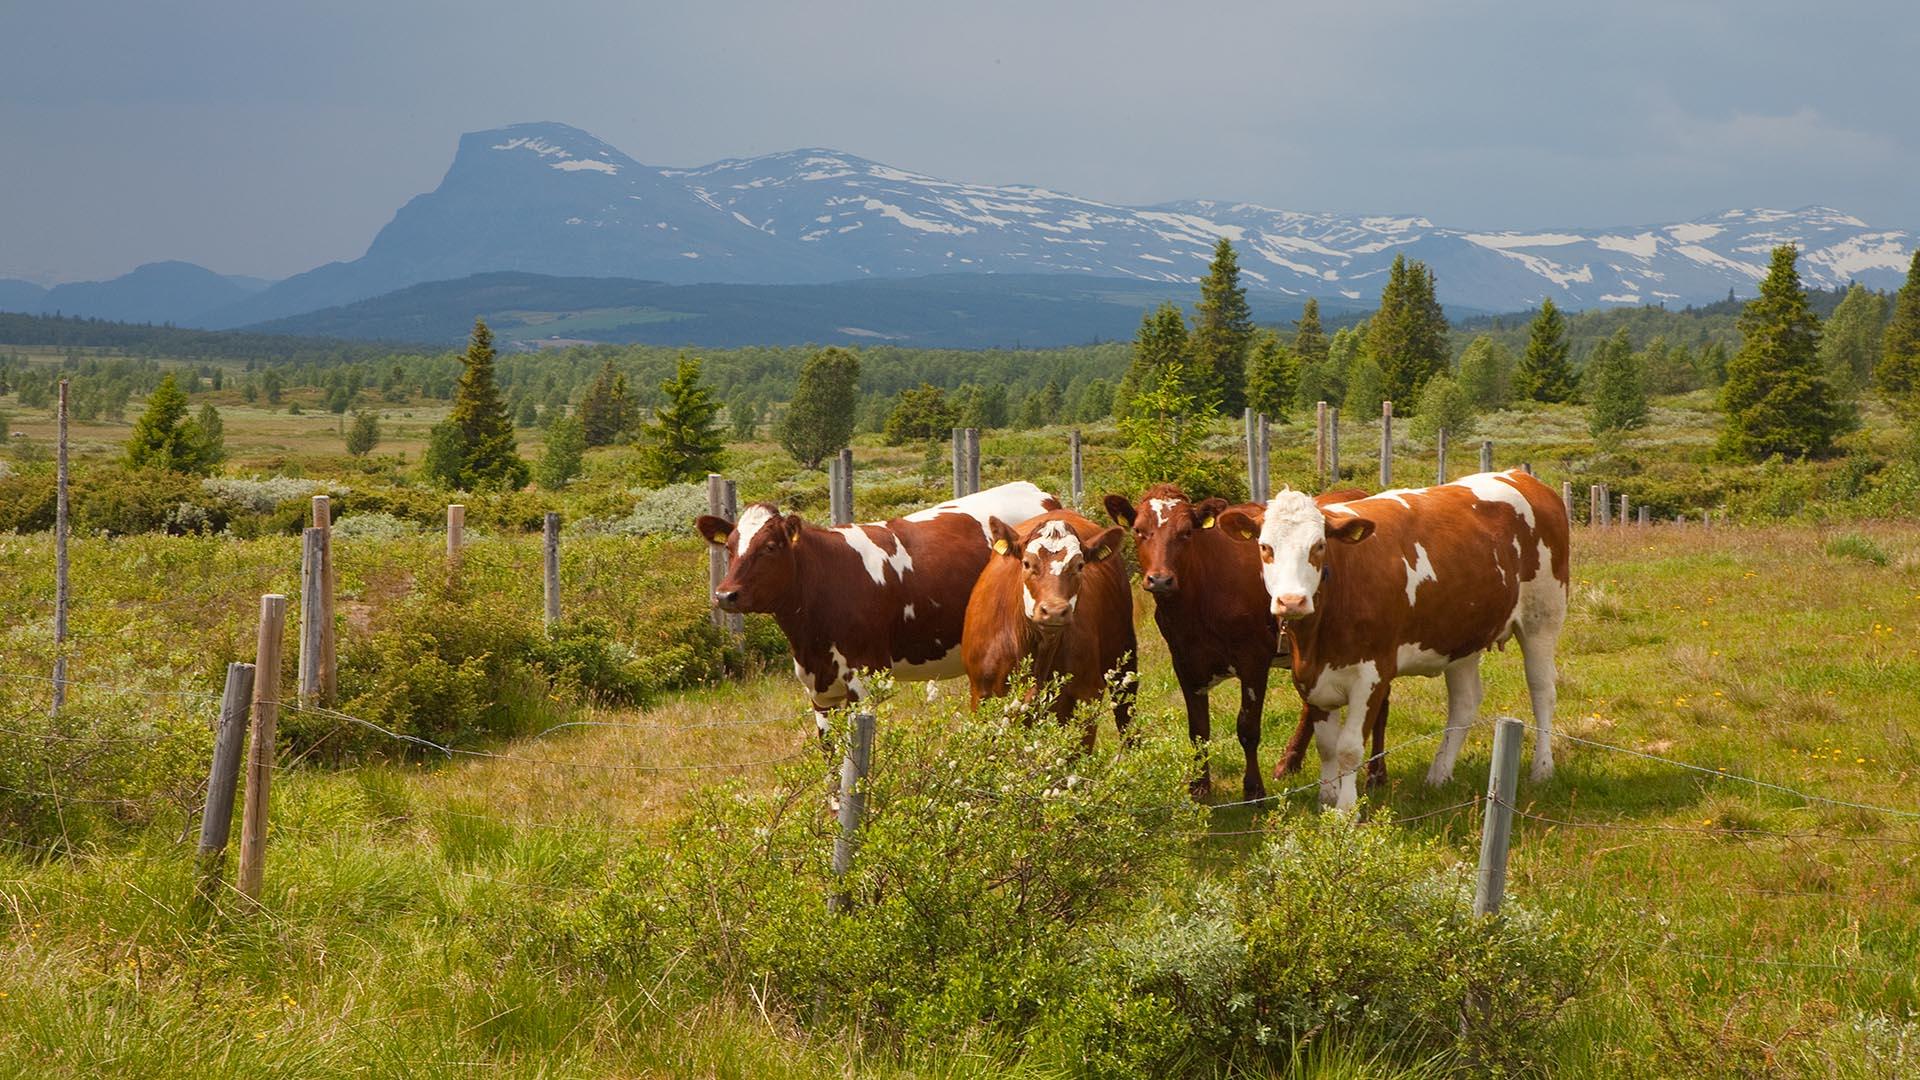 Drei braun-weiß gescheckte Kühe stehen an einem grauen, bewölkten Sommertag auf einer Bergweide und gucken den Fotografen an. Im Hintergrund erhebt sich eine Bergkette.